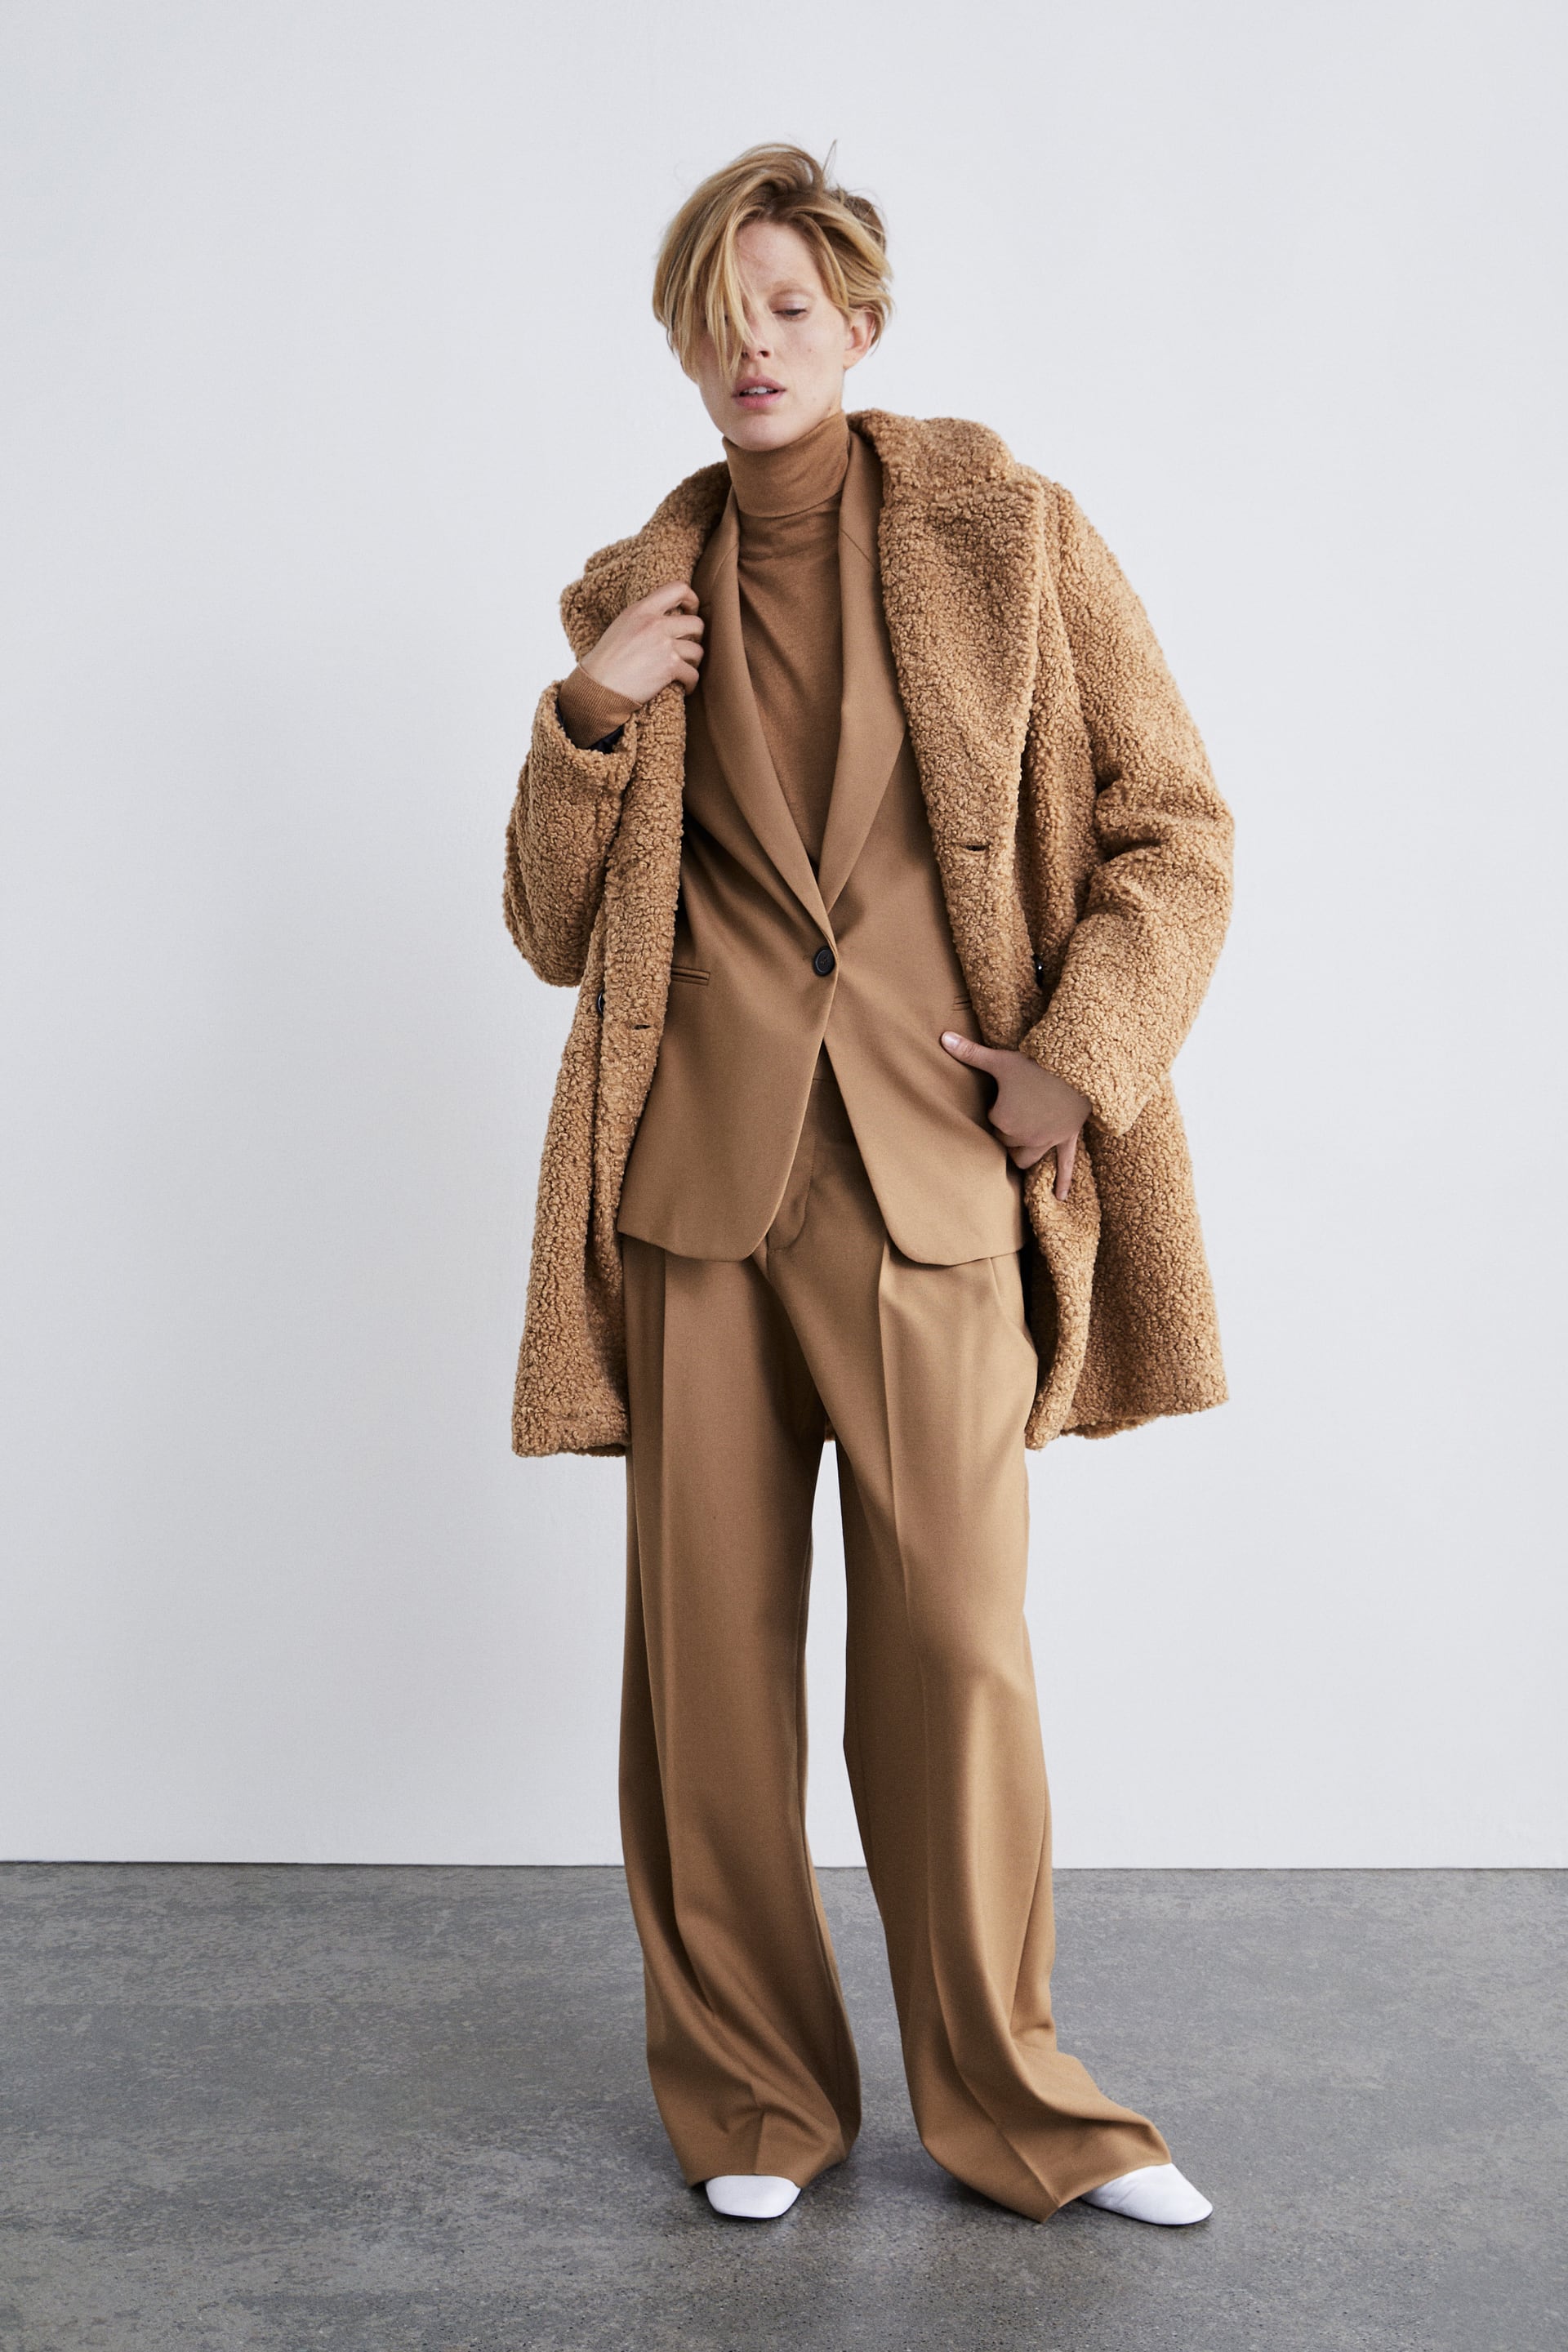 Cappotto cammello teddy bear coat Zara a 79,95 euro